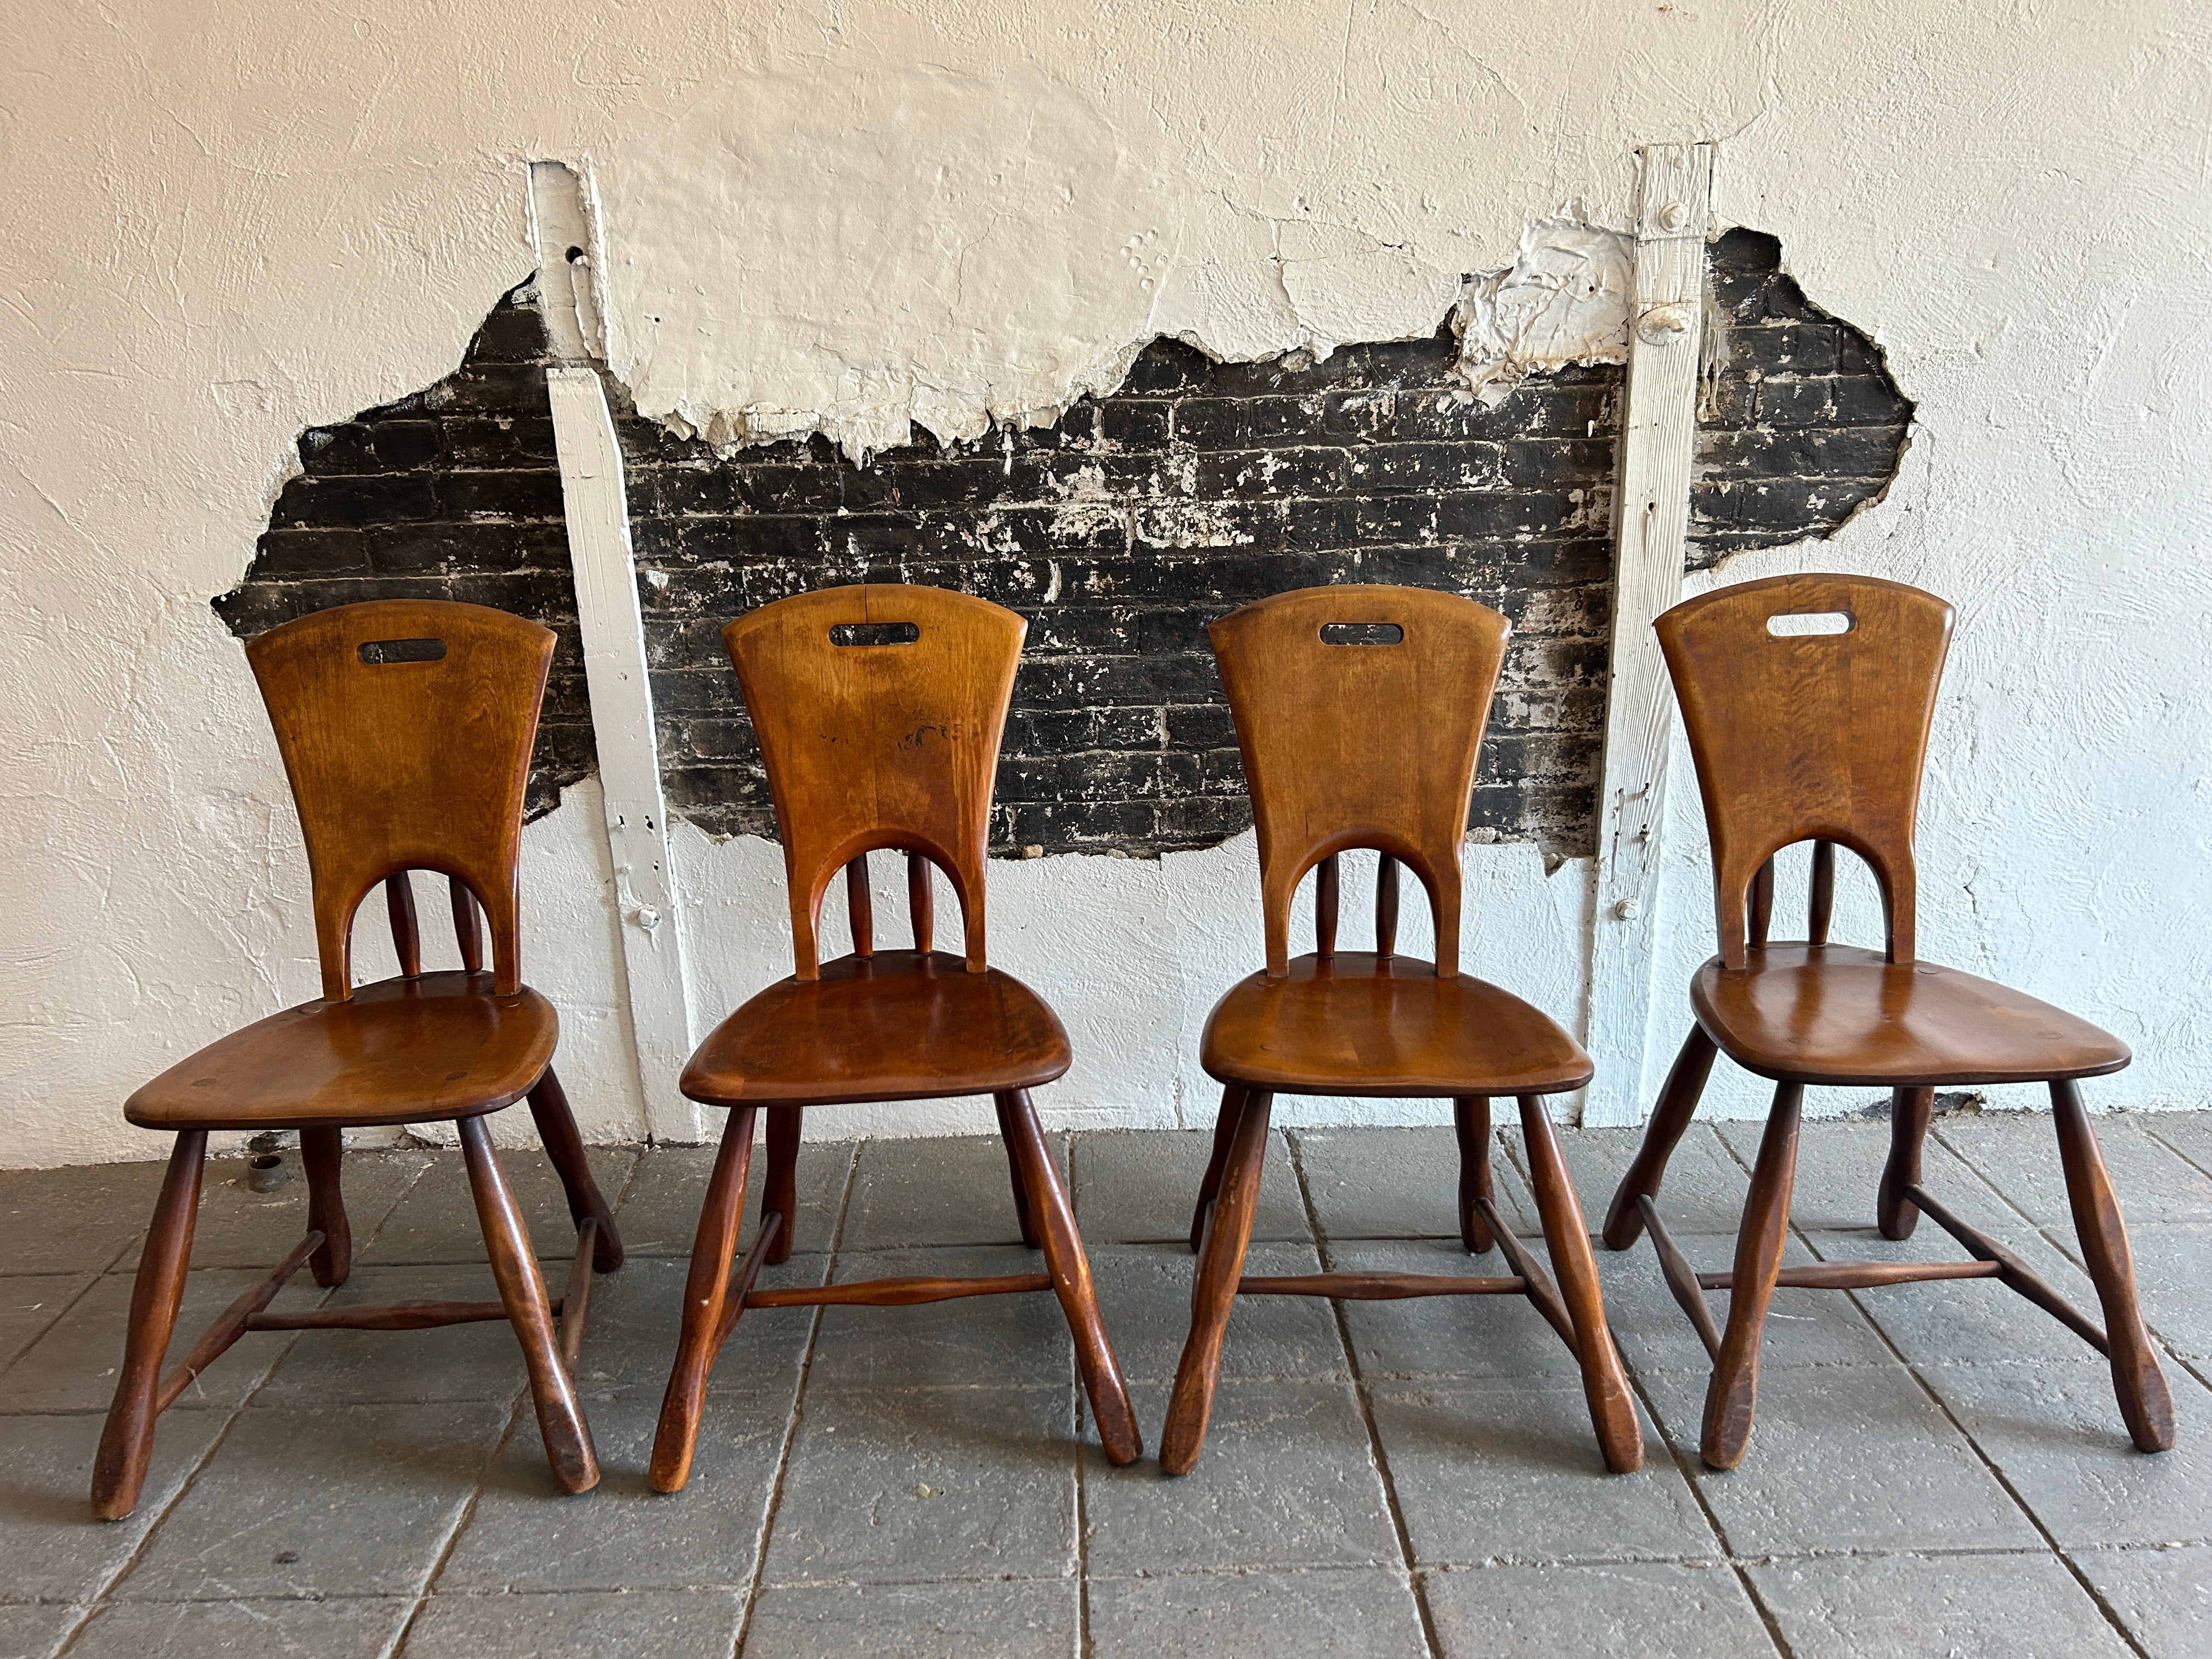 Ensemble de 4 chaises de salle à manger rustiques en bois massif sculptural de style moderne du milieu du siècle. Chaises de salle à manger sculpturales en bois massif de style américain précoce, en finition noyer. Les chaises sont d'un bois plus